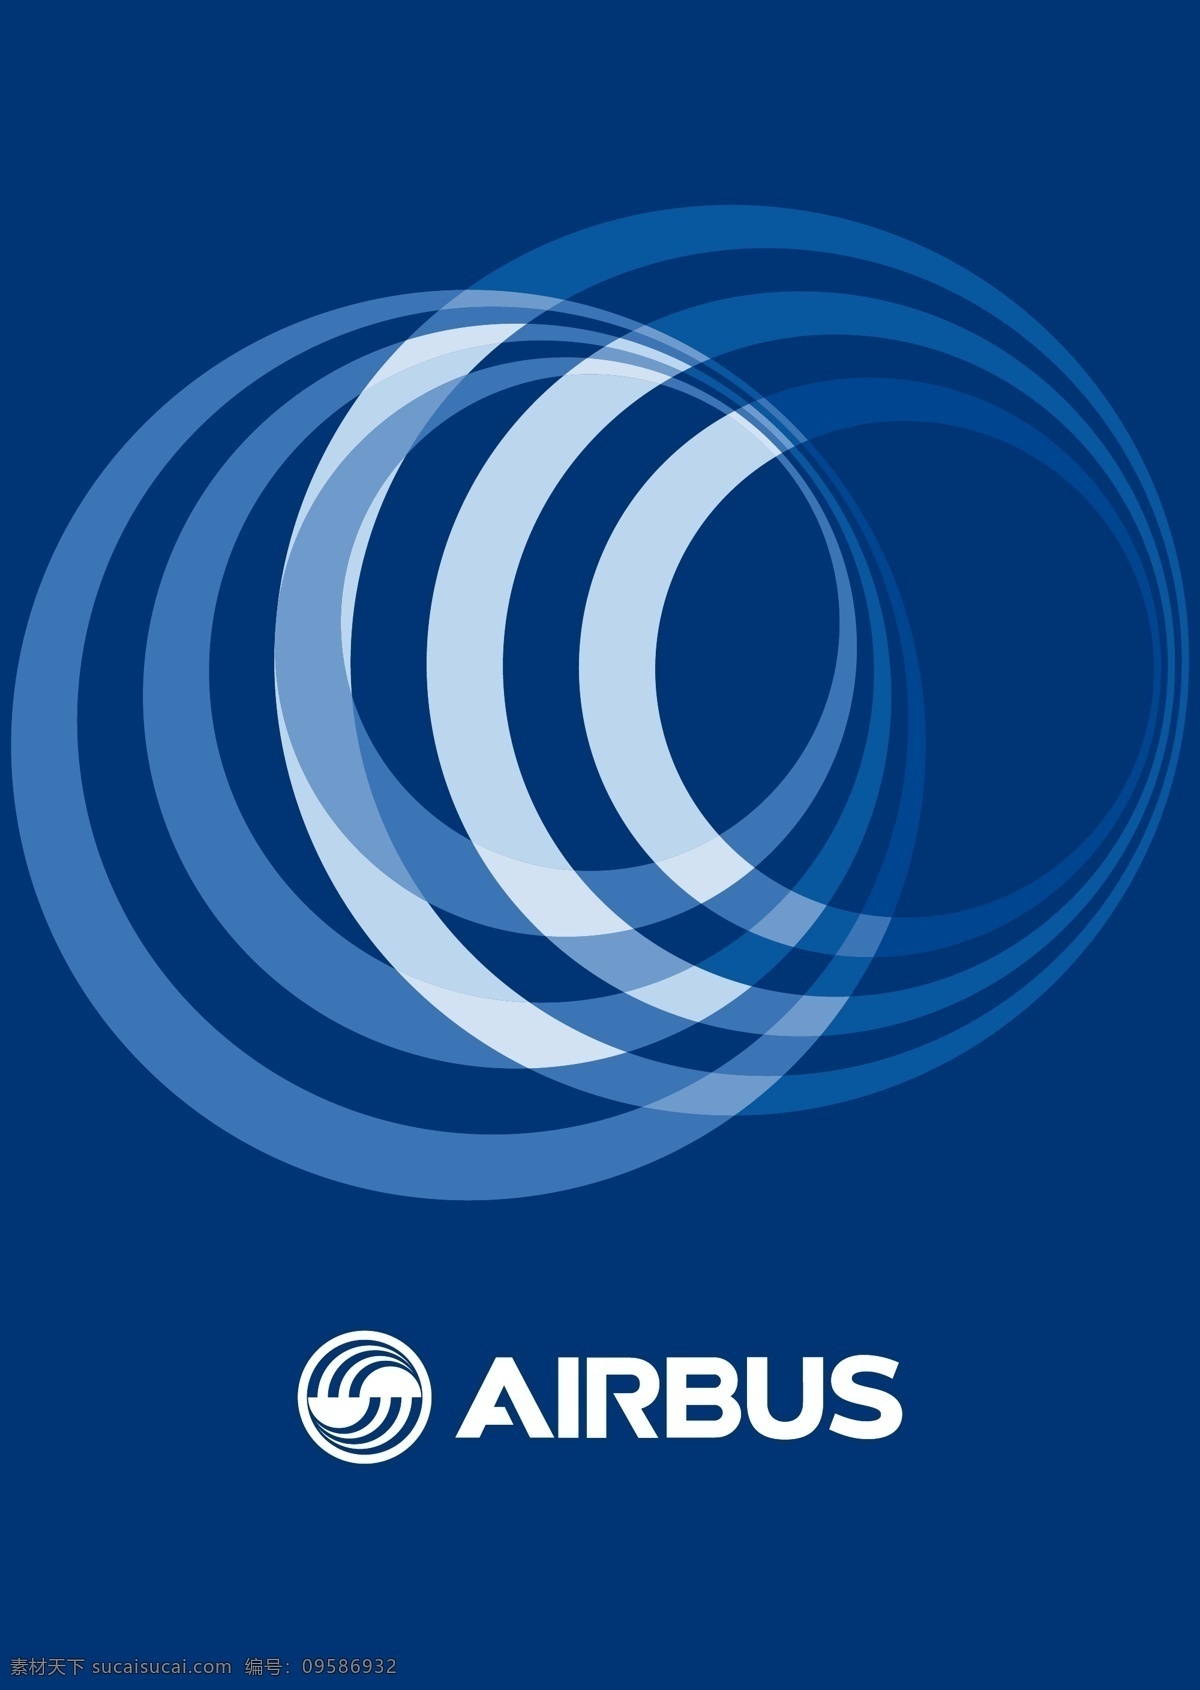 空客尾翼 空客 图案 飞机 空中客车 a320 neo airbus 标志图标 企业 logo 标志